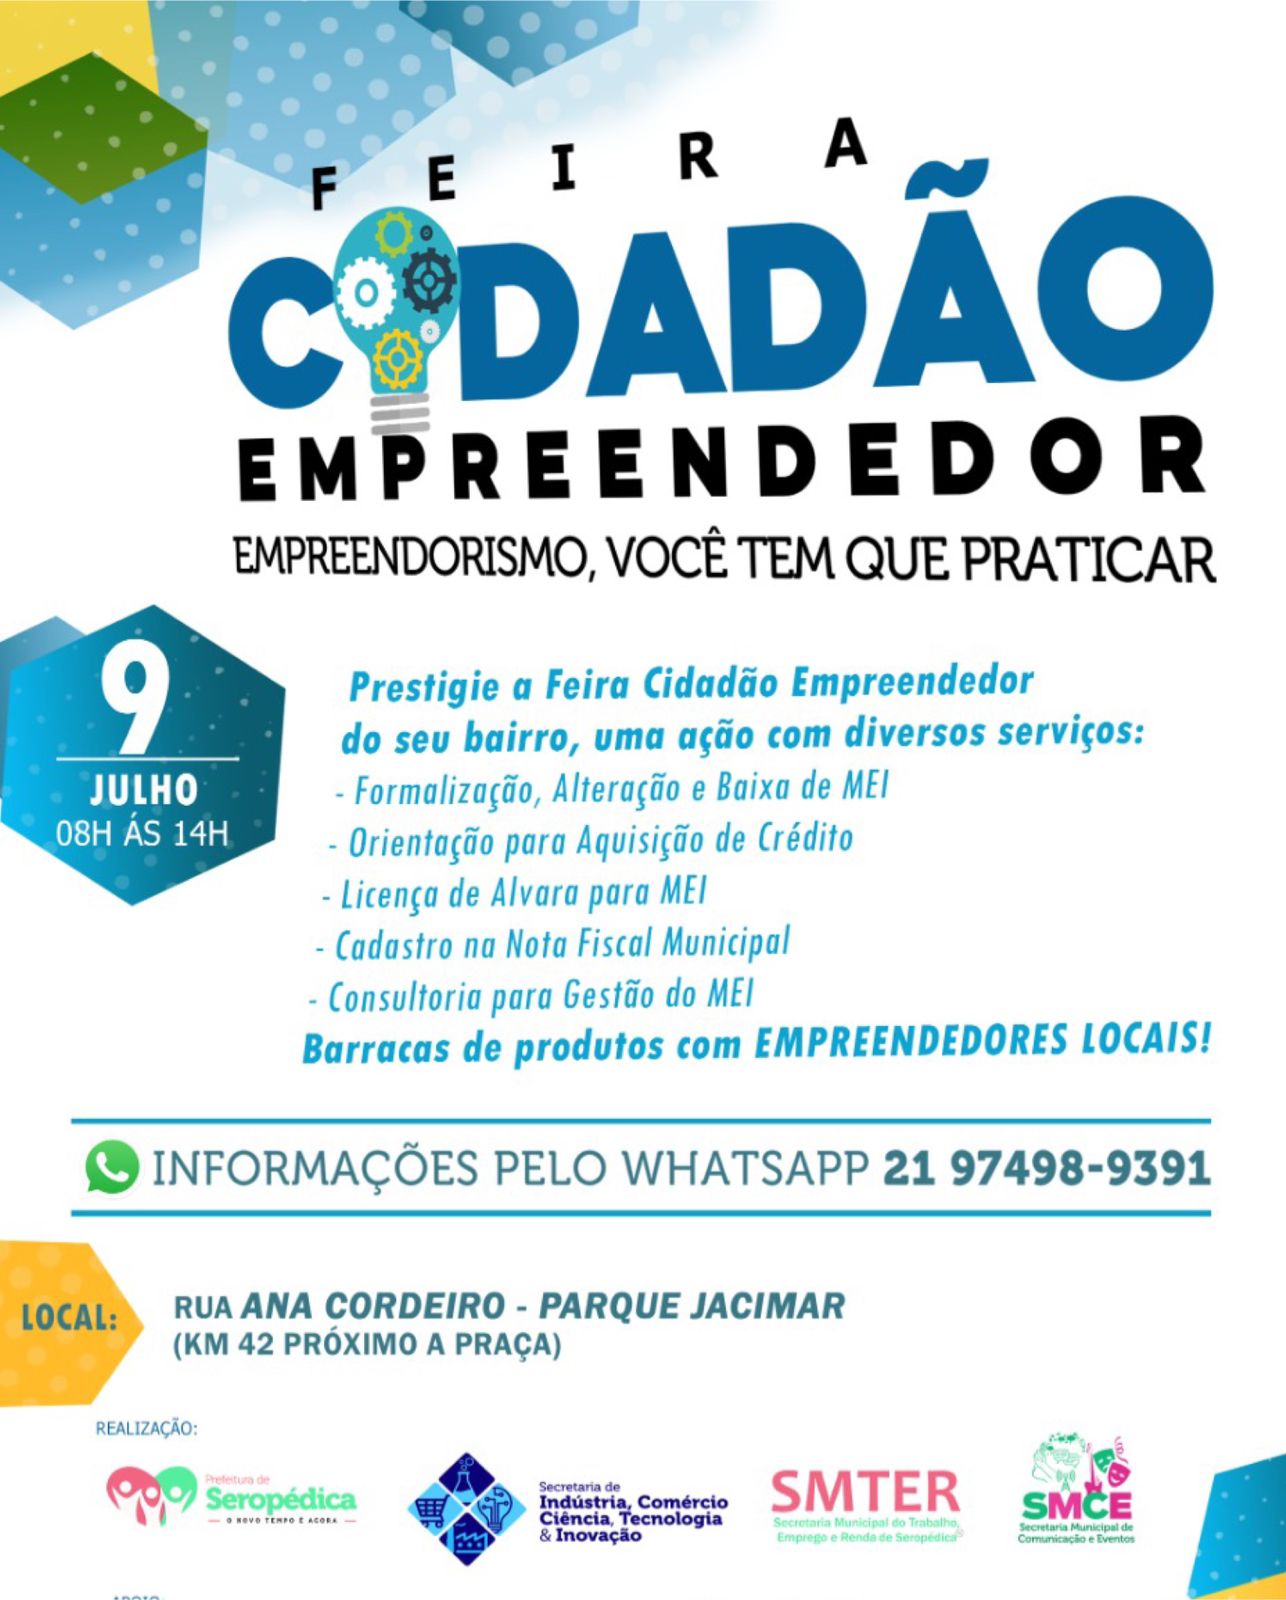 Venham Participar da Feira Cidadão Empreendedor, no Parque Jacimar em Seropédica 9 de julho